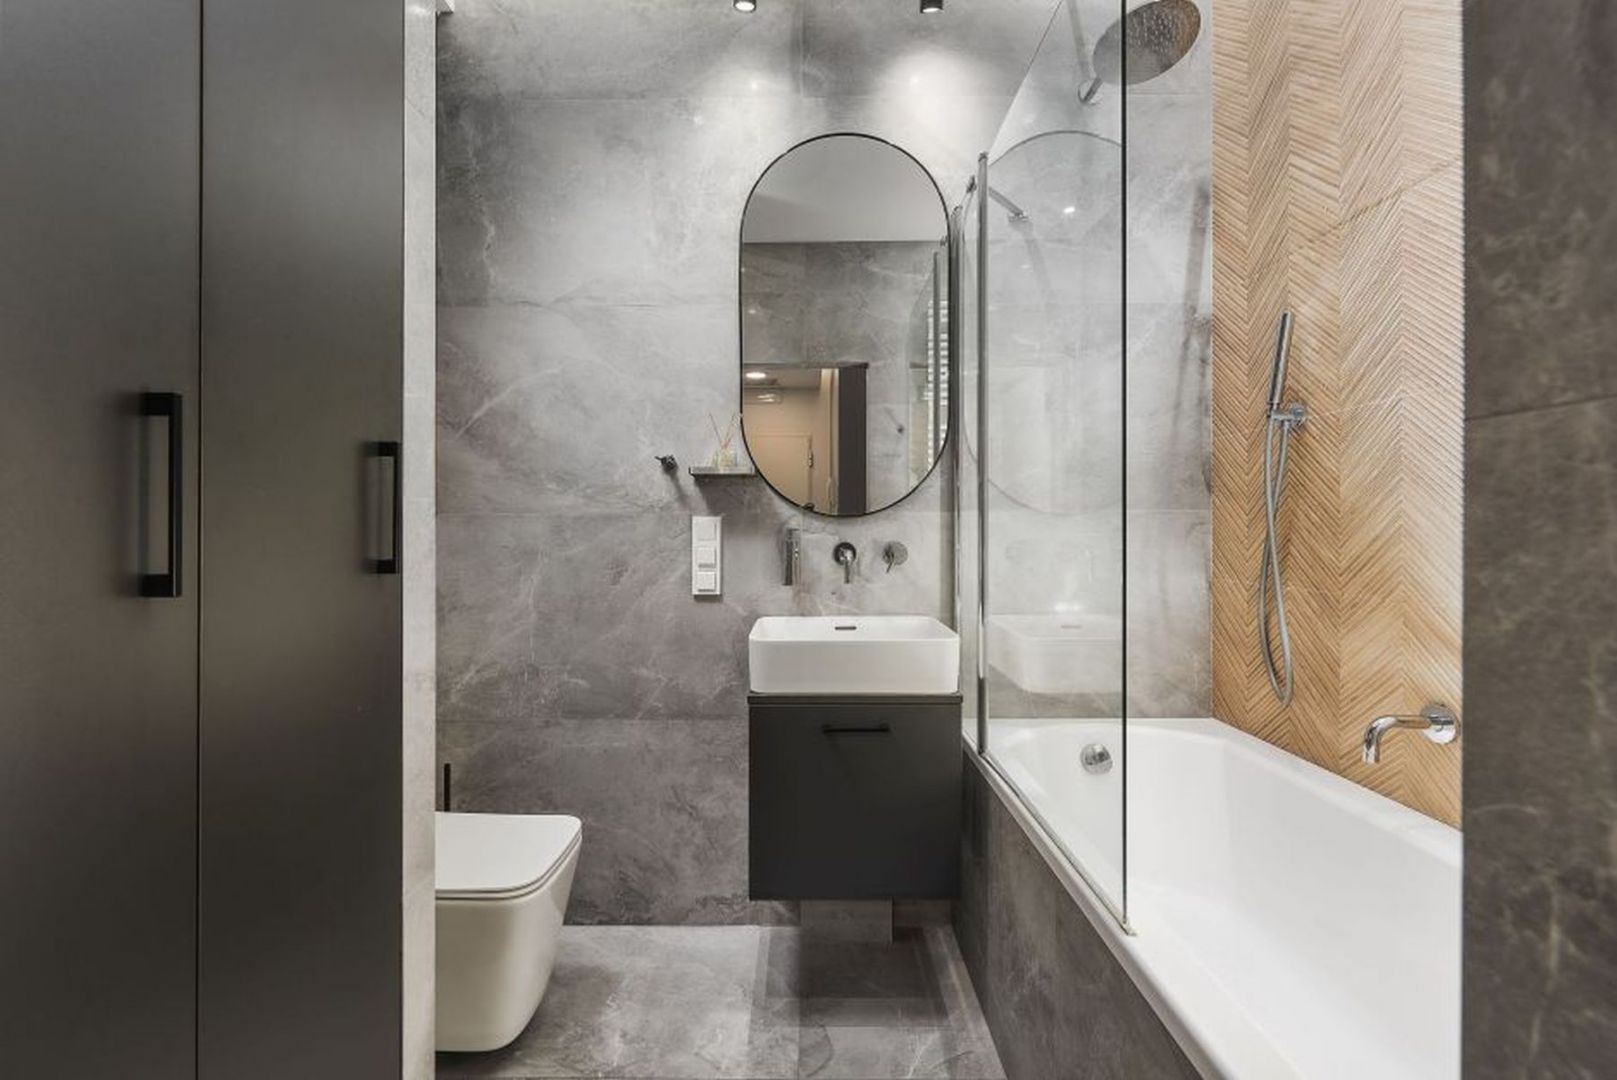 Mała łazienka z wanną, która pełni też rolę prysznica. Projekt: Kornelia Knapik Ziemnicka, Kora Design. Zdjęcie: Marek Królikowski